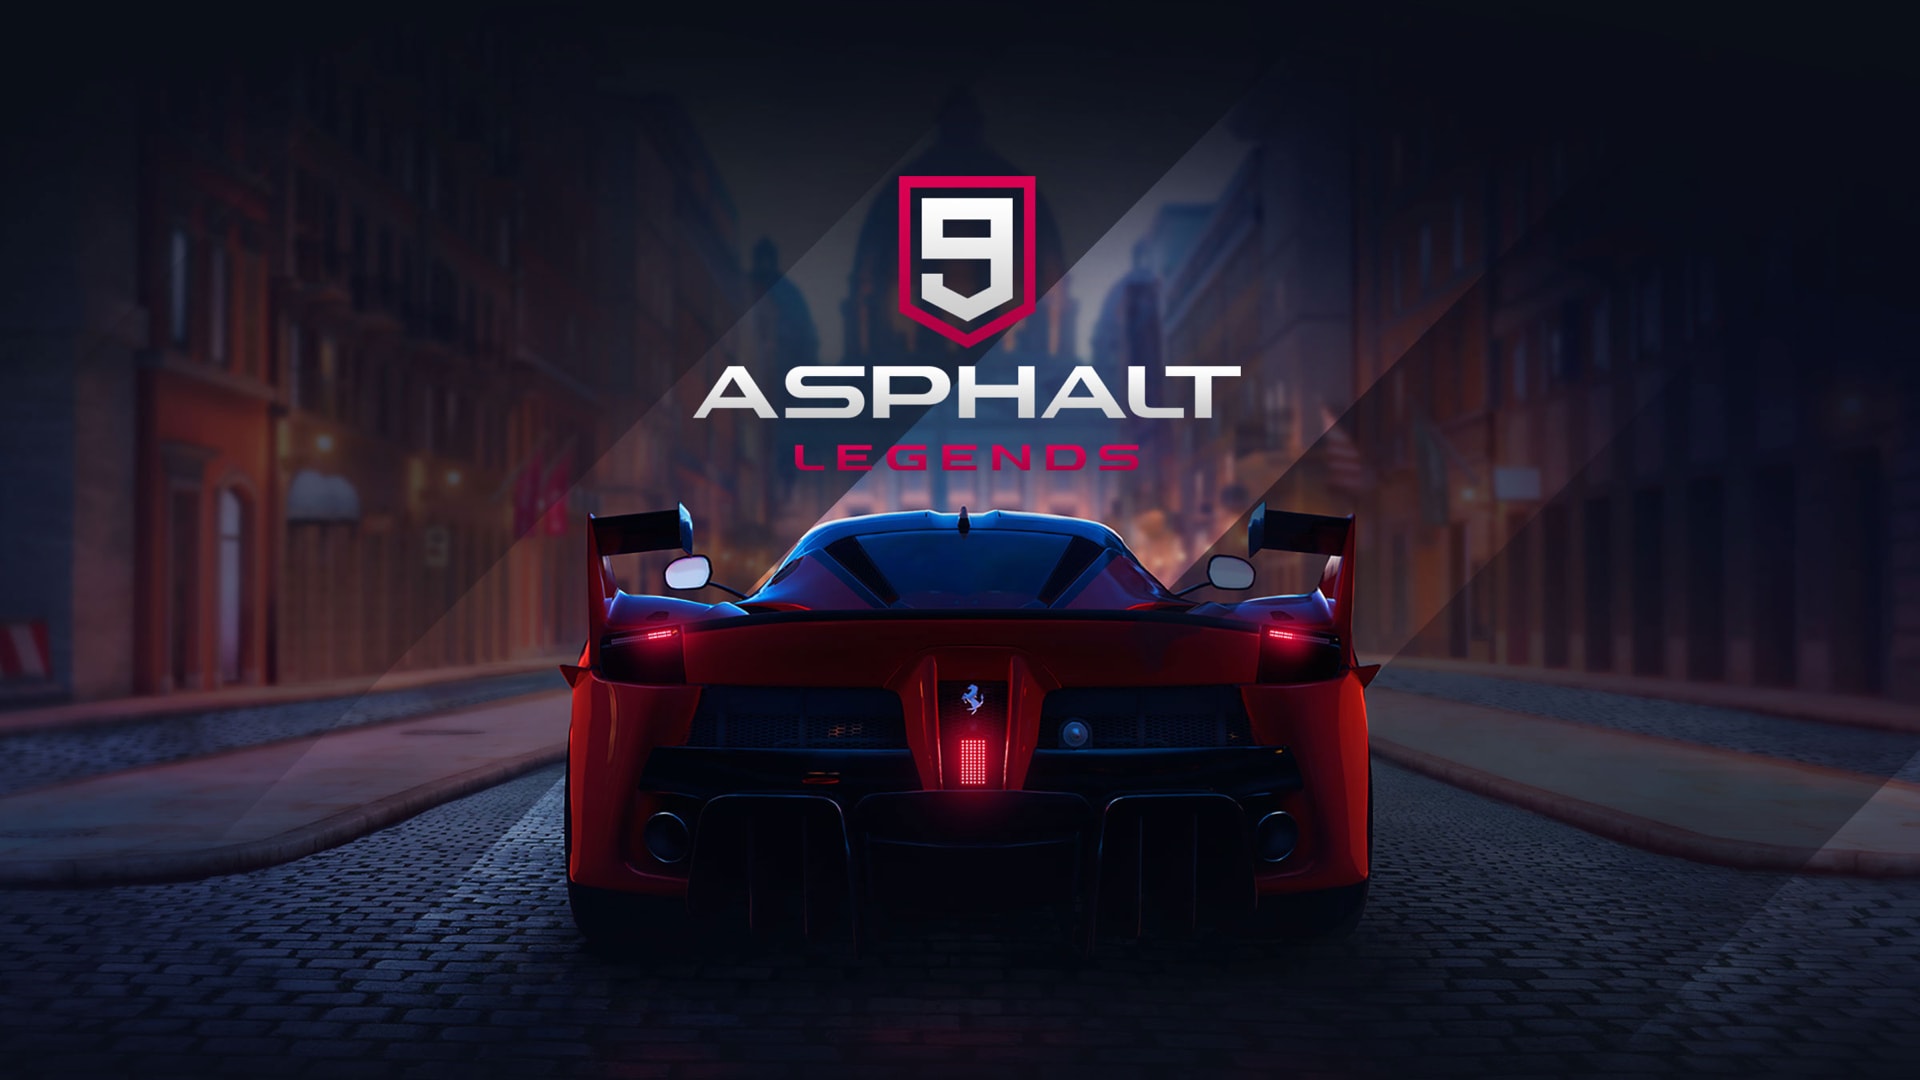 asphalt, asphalt 9: legends, video game